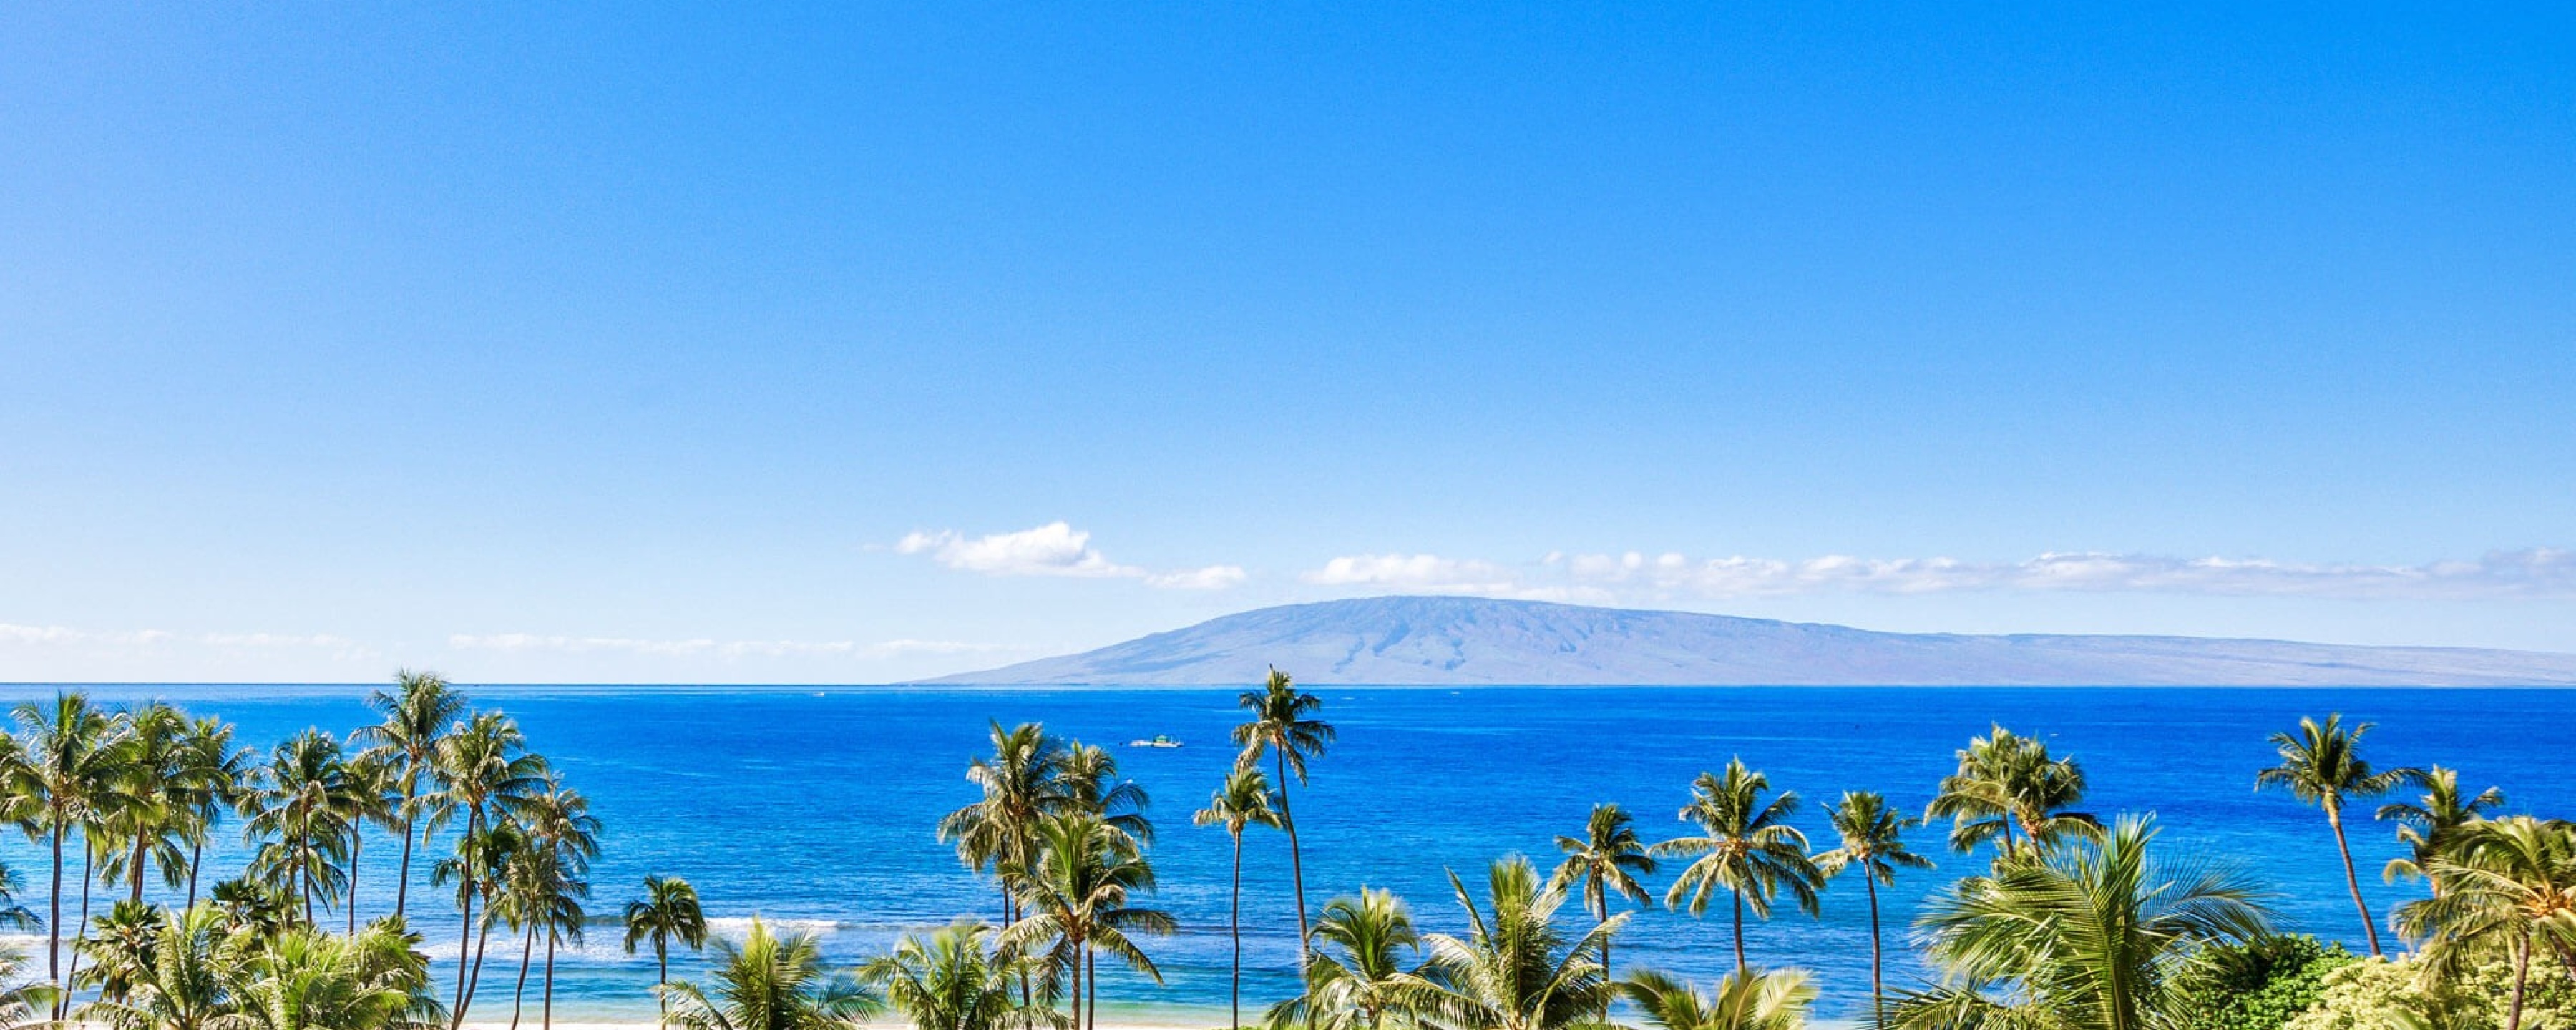 Maui Vacation Rentals & Luxury Condos